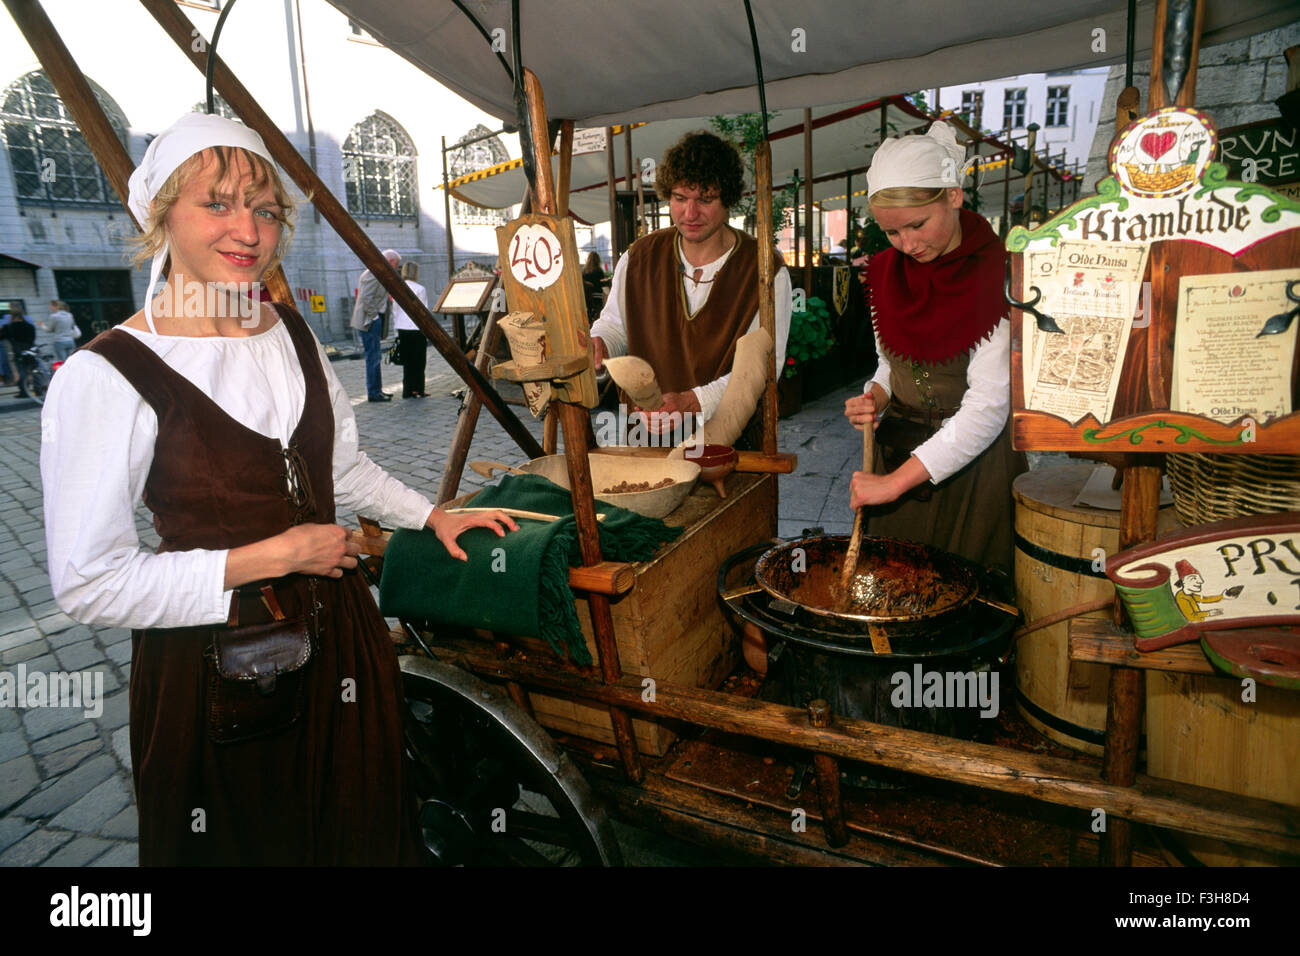 Estland, Tallinn, Olde Hansa mittelalterliches Restaurant, Frauen tragen traditionelle mittelalterliche Kleidung Stockfoto